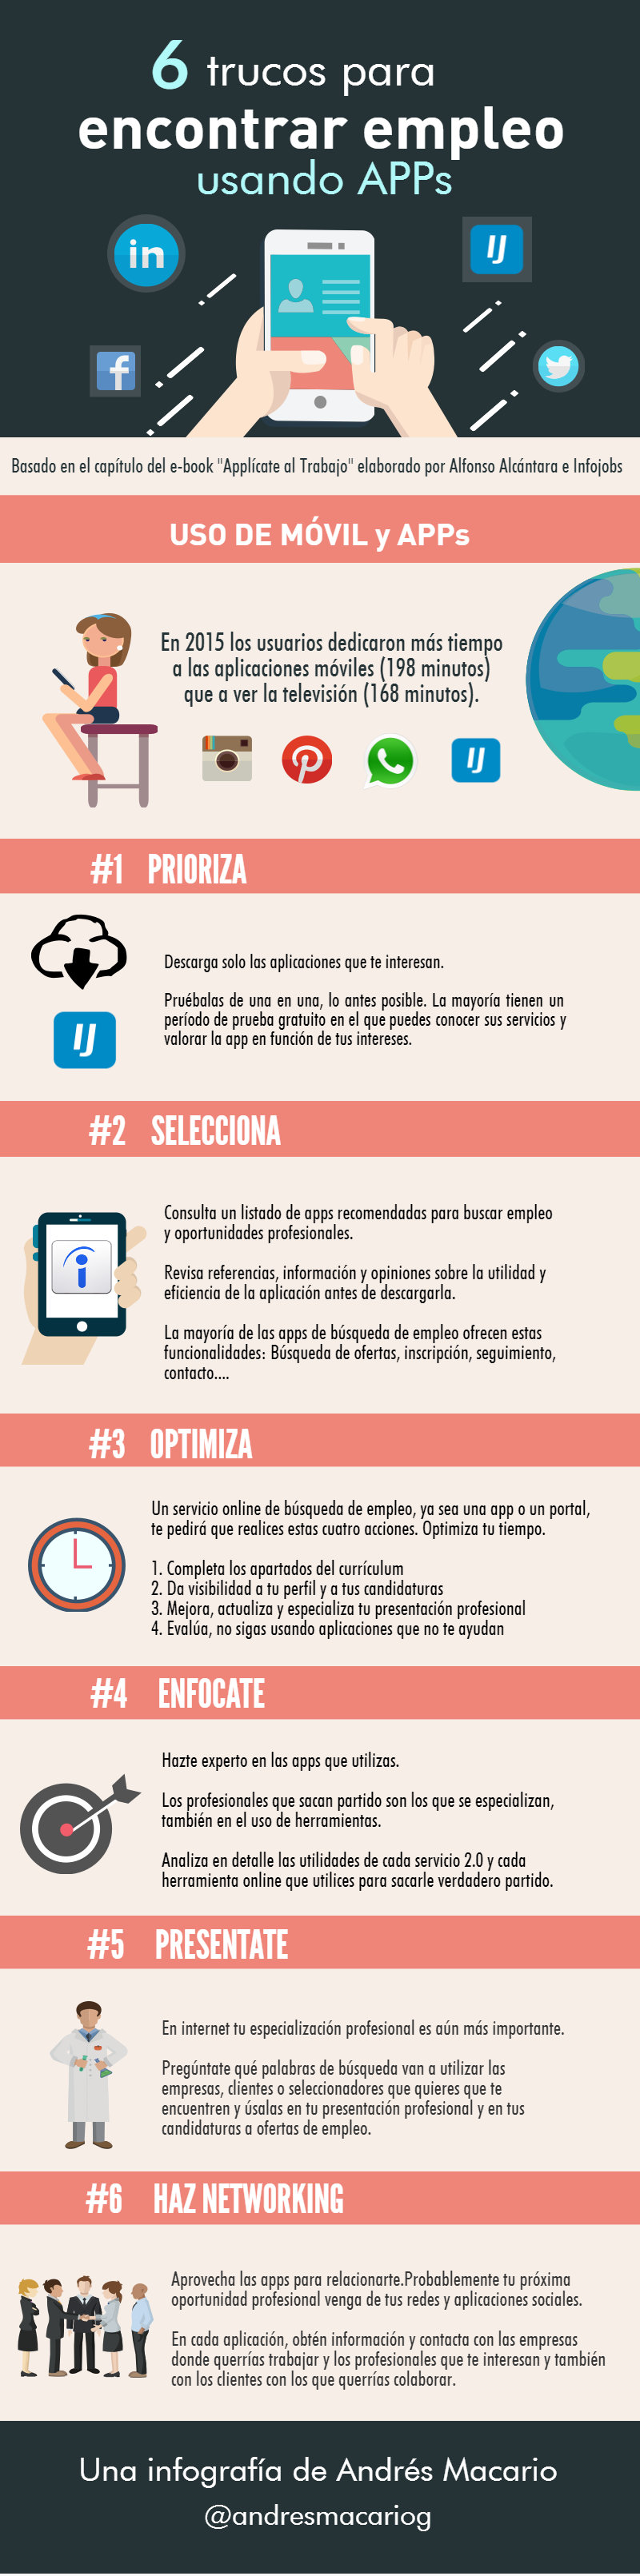 6 trucos para encontrar empleo usando apps -infografia Andres Macario